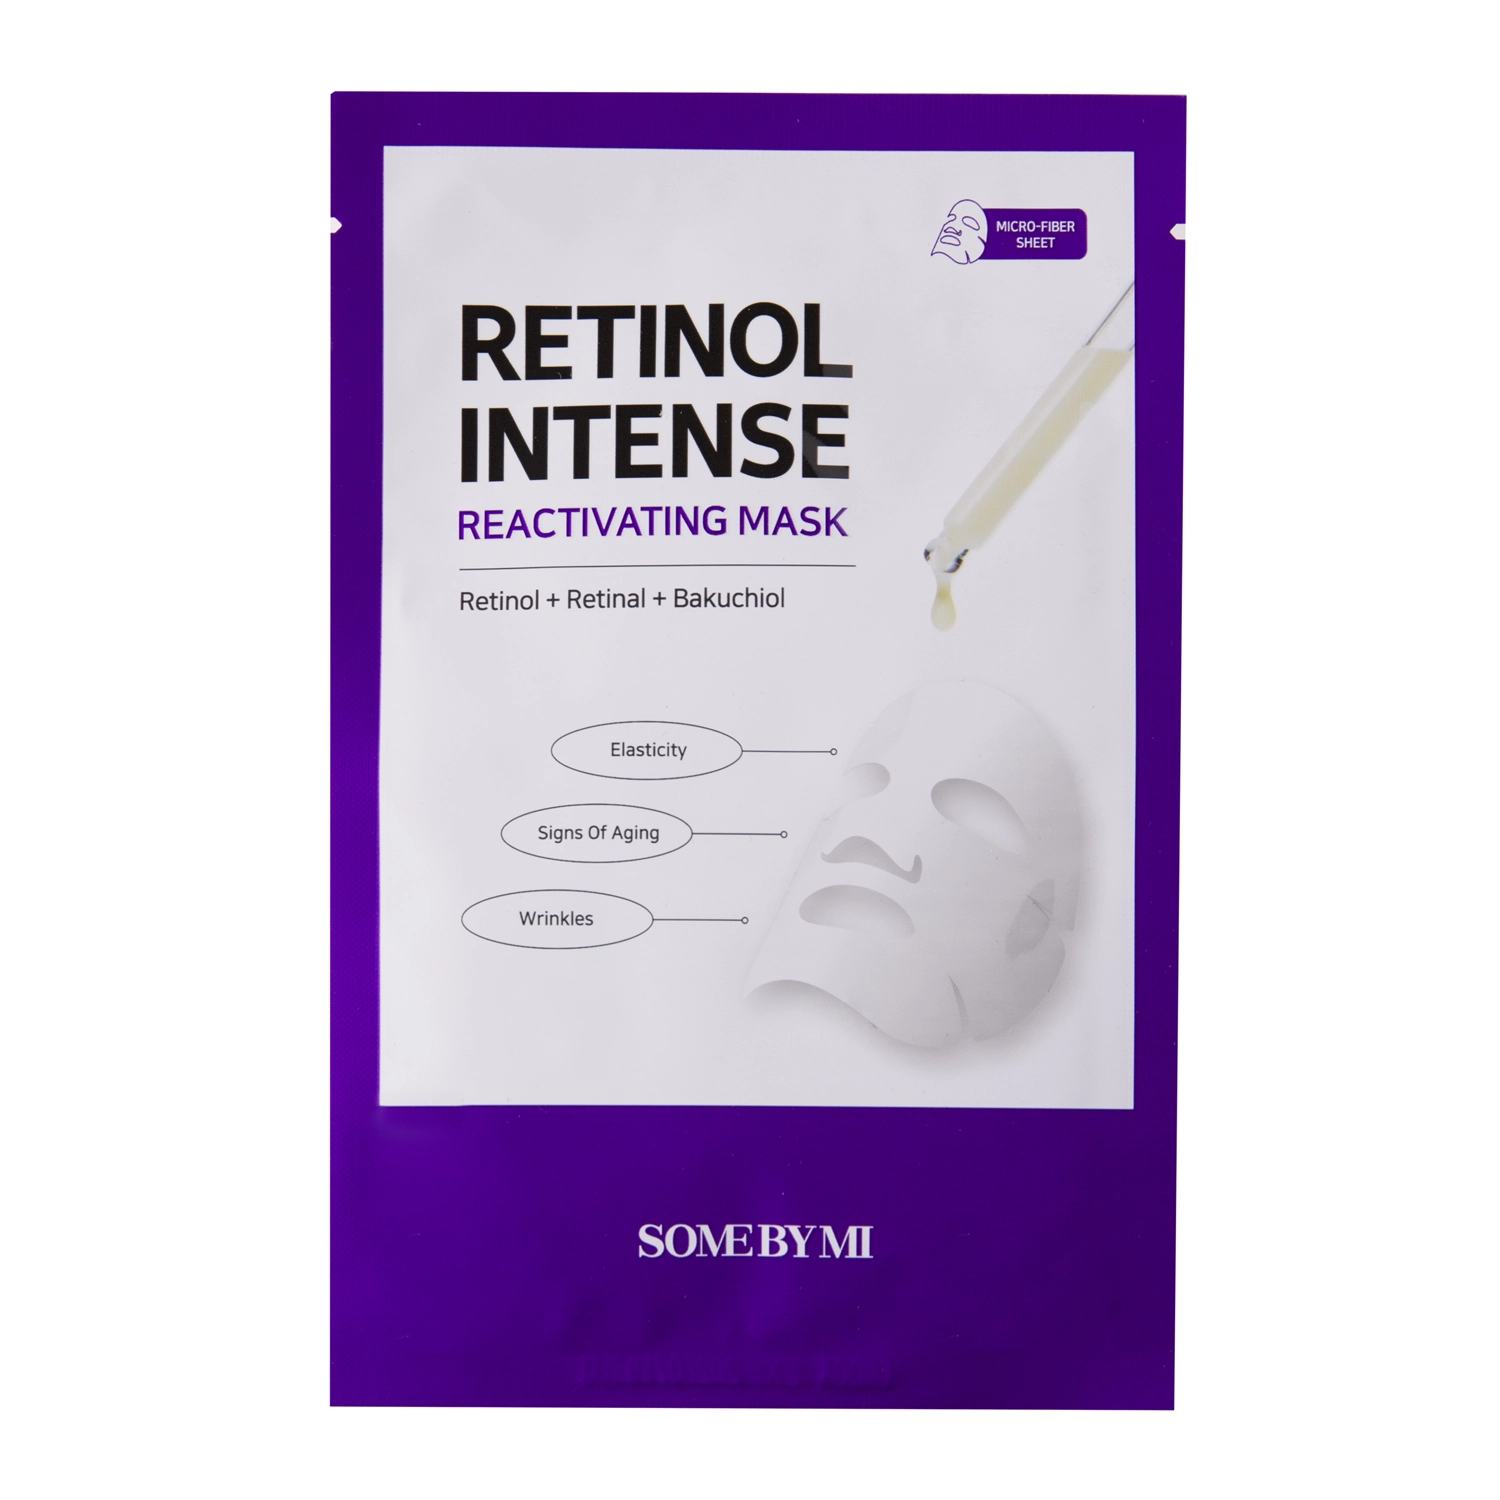 Some By Mi - Retinol Intense Reactivating Mask - Anti-Aging Sheet Mask - 22g